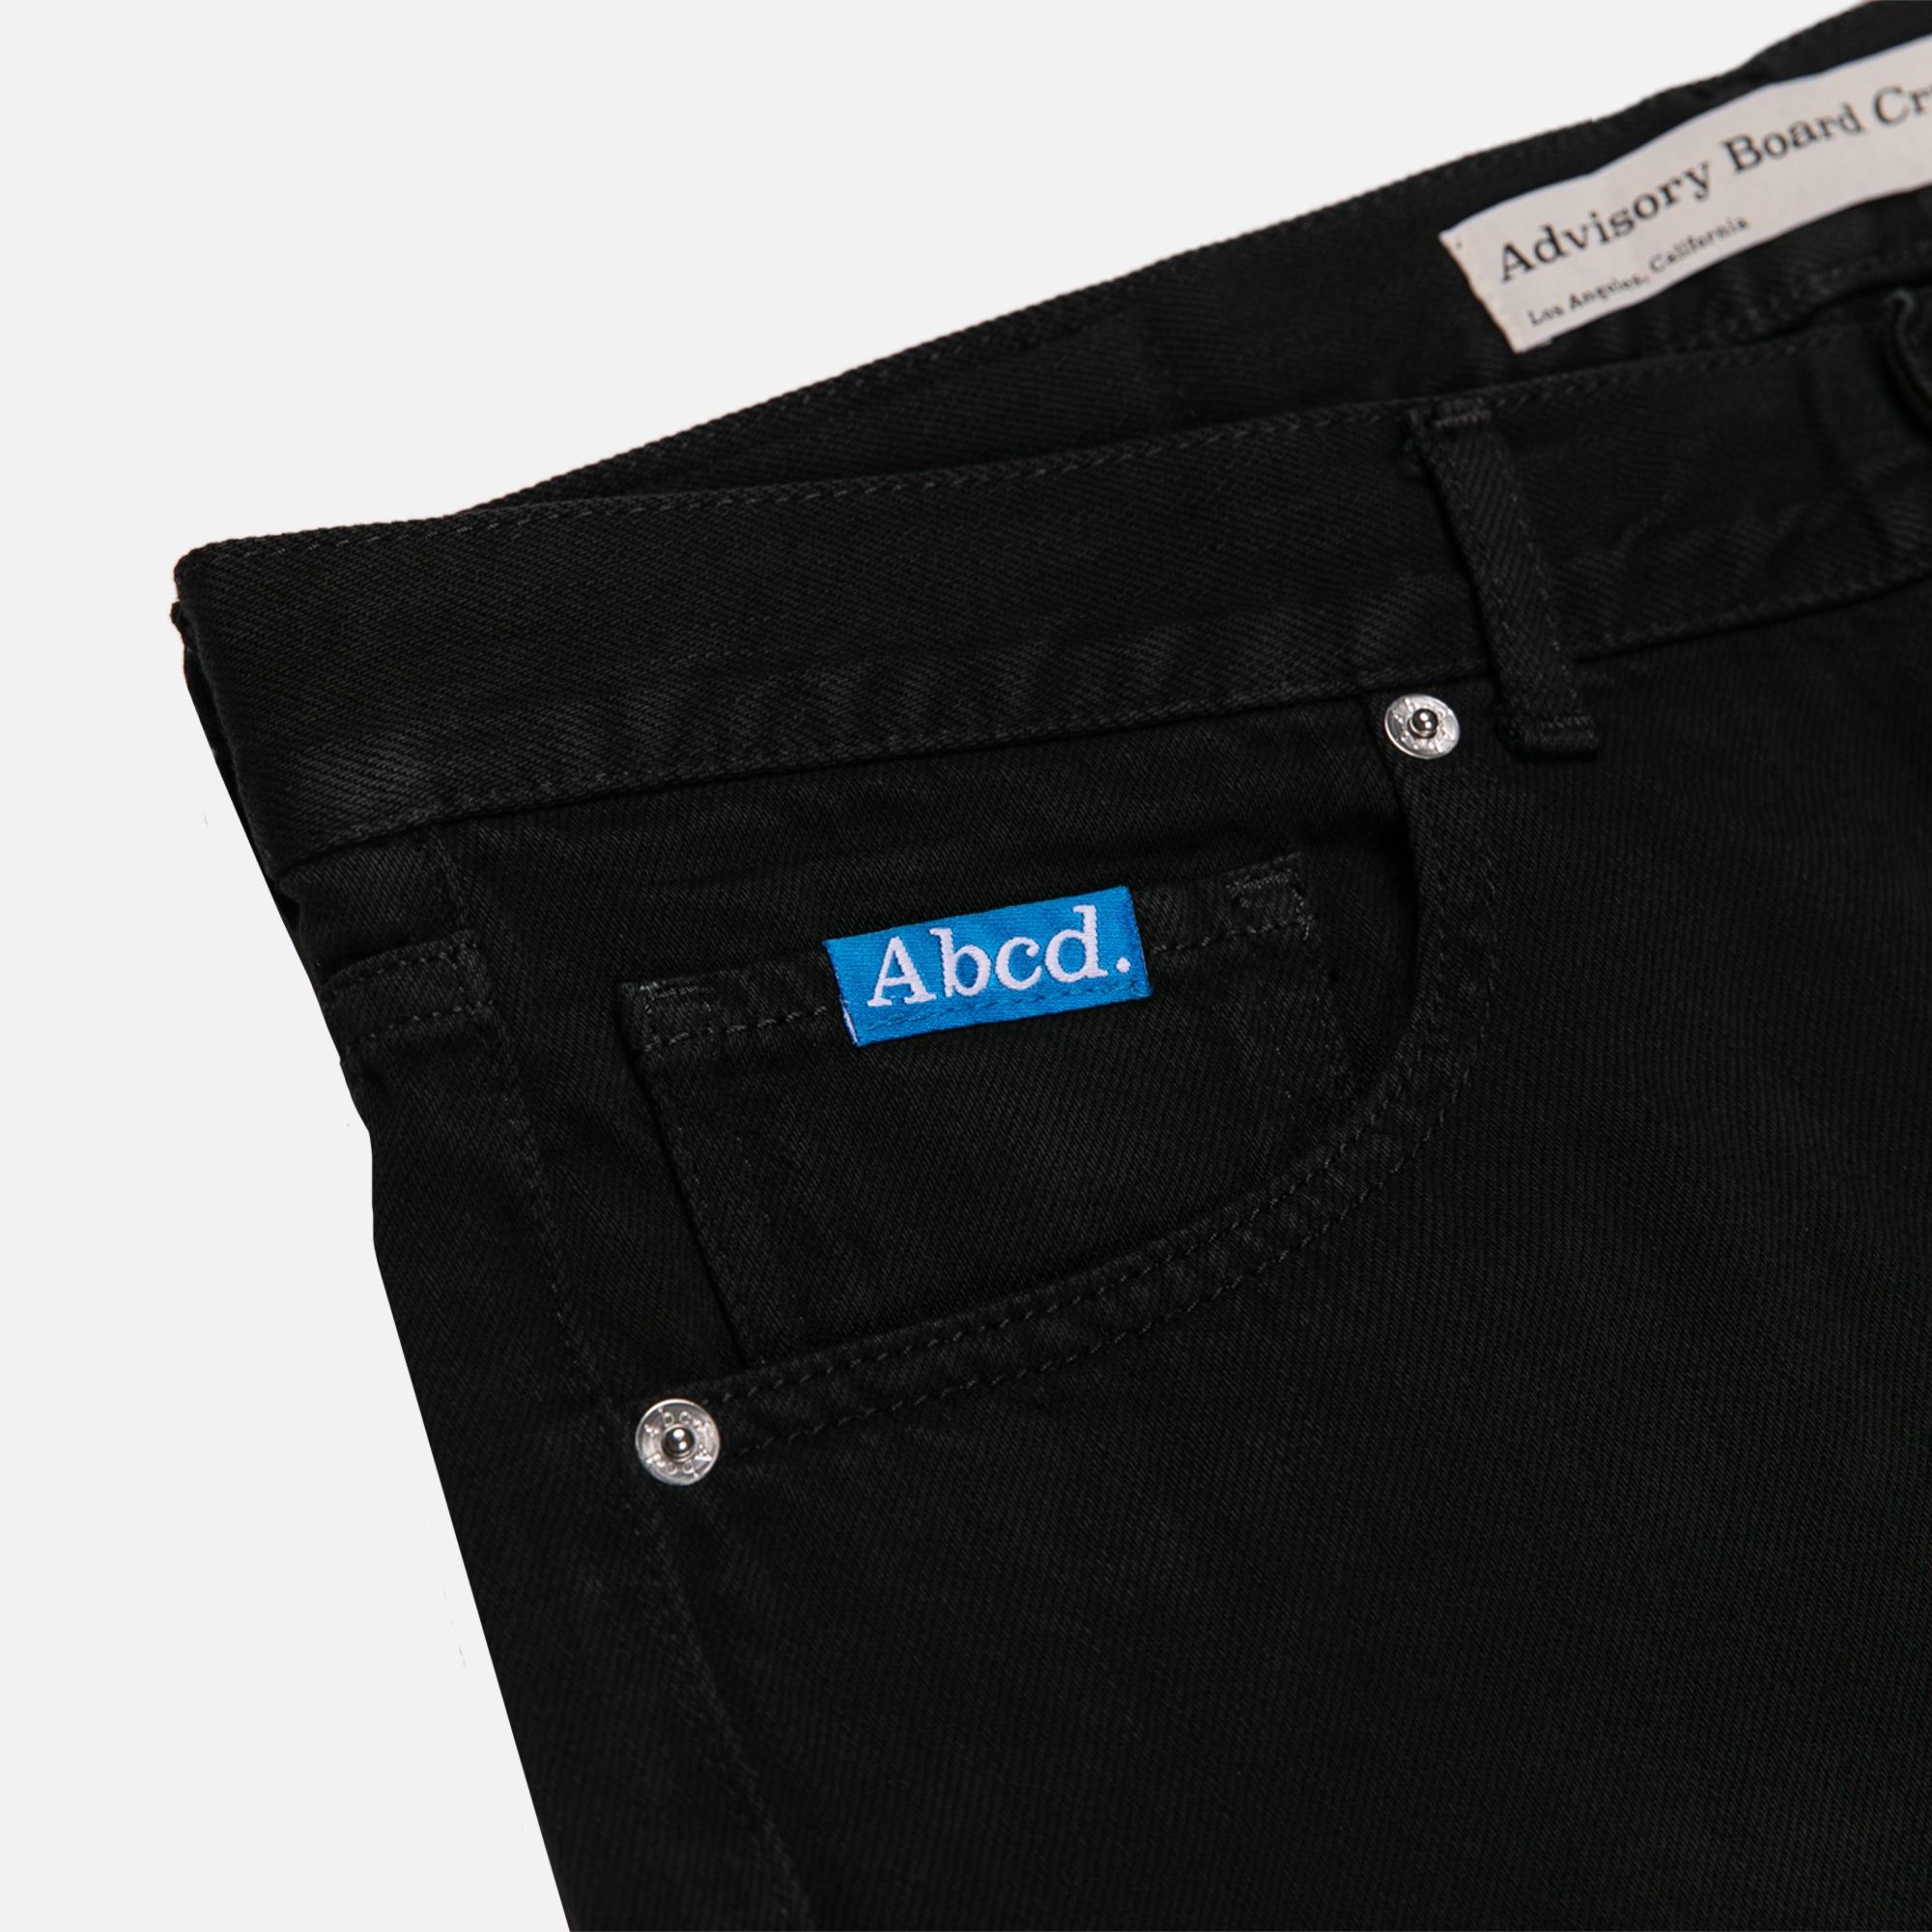 ABCD. Fit B Slim Fit Jean - BLACK